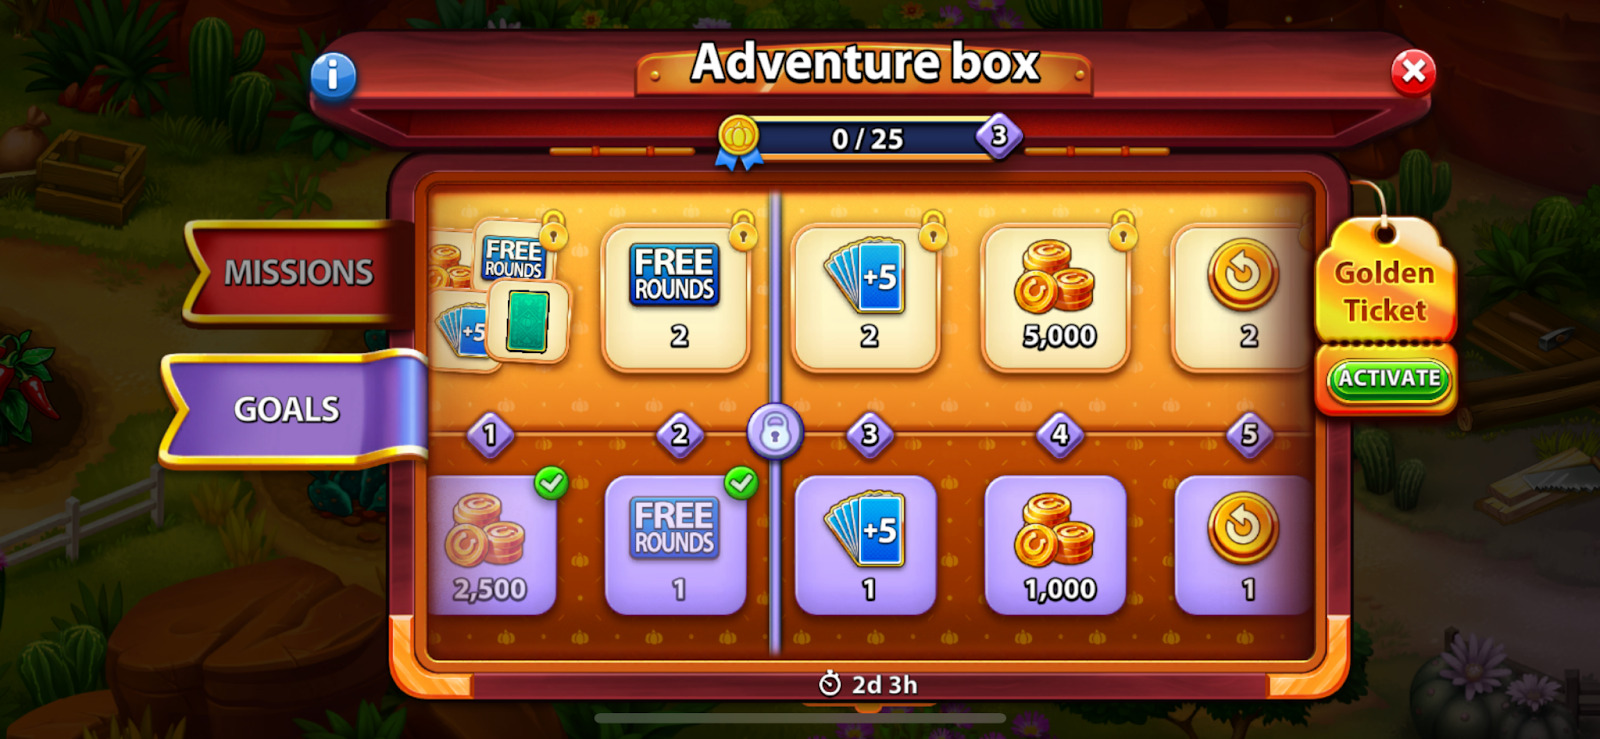 Adventure boxes